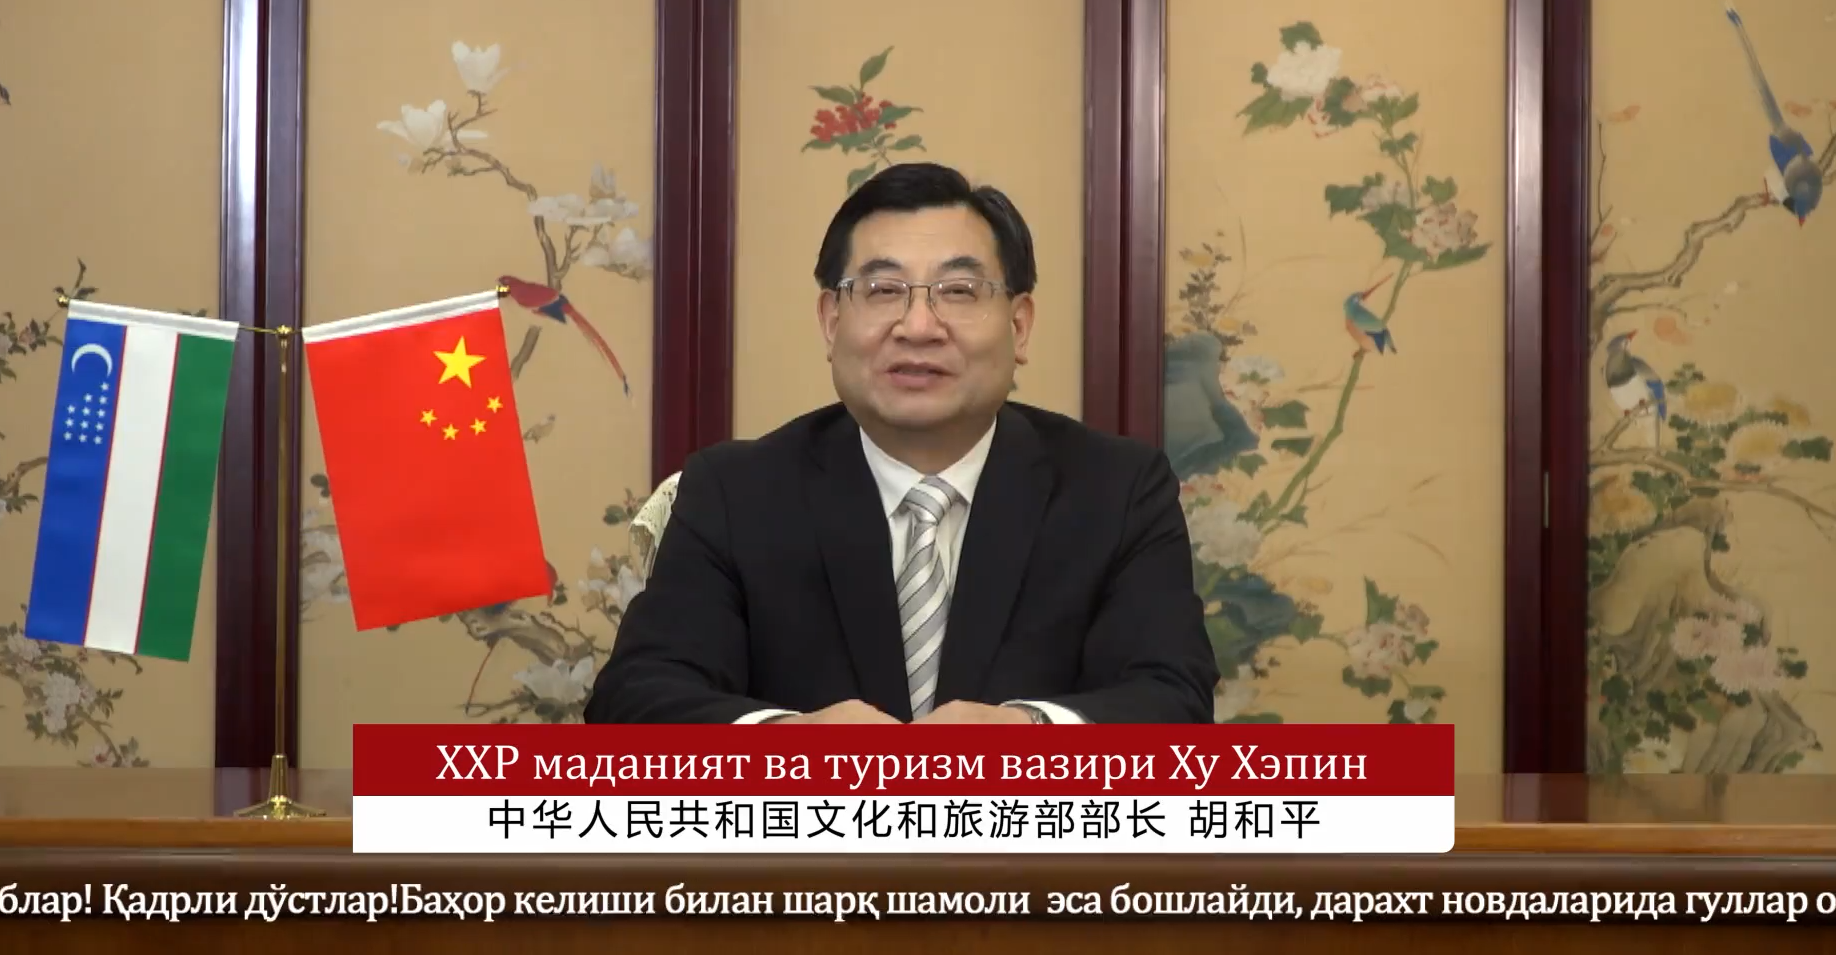 “春之路——庆祝中国和乌兹别克斯坦建交30周年”云端文艺演播举办